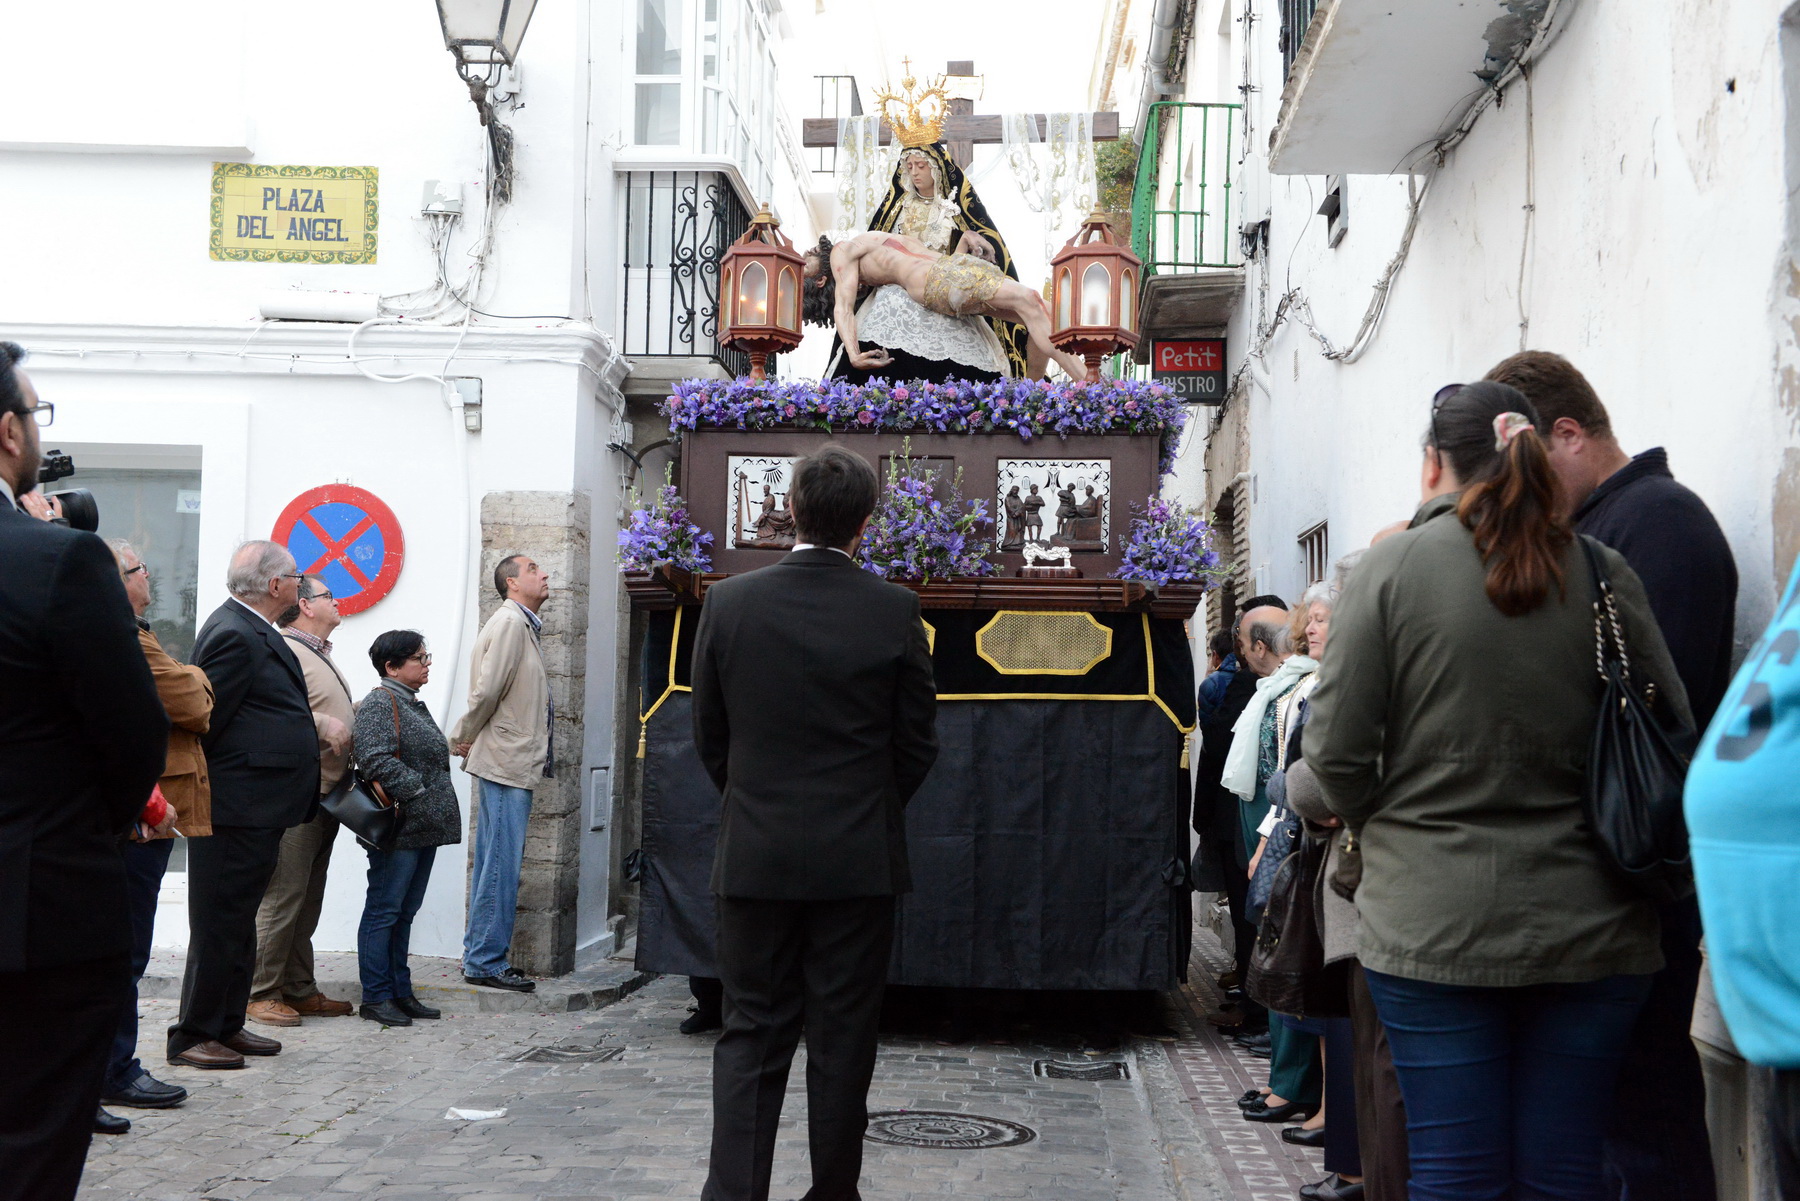 Semana Santa ist tief verwurtzelt in die spanische Kultur